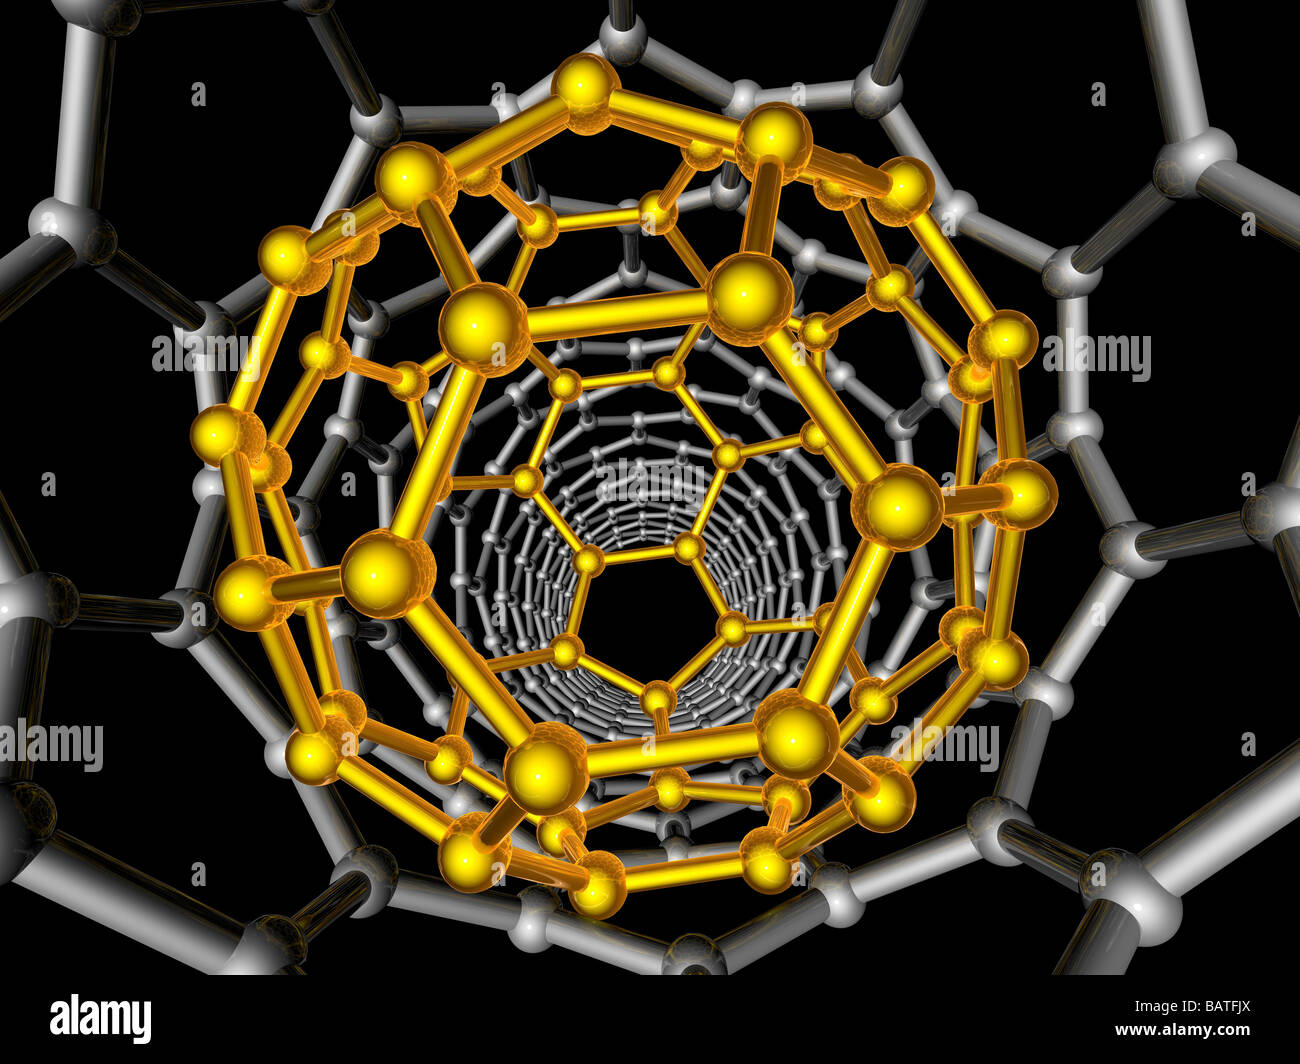 Footballène et nanotubes de carbone. L'oeuvre de l'ordinateur montrant les structures de carbone hexagonale de abuckyball (jaune) Banque D'Images